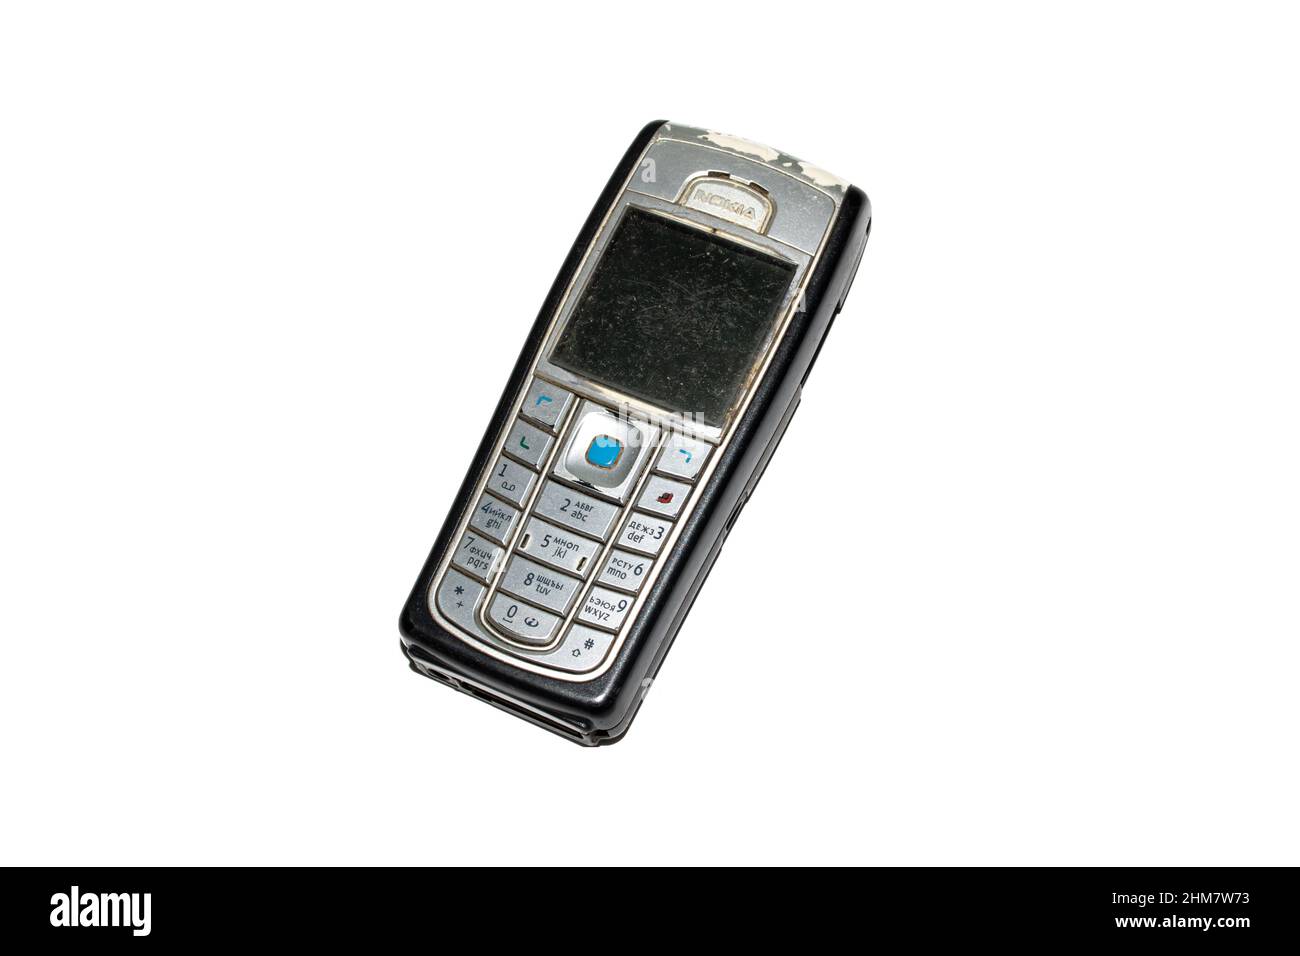 Belarus, Novopolotsk - 19 januay, 2022: Old Nokia push-button phone isolated on white background Stock Photo